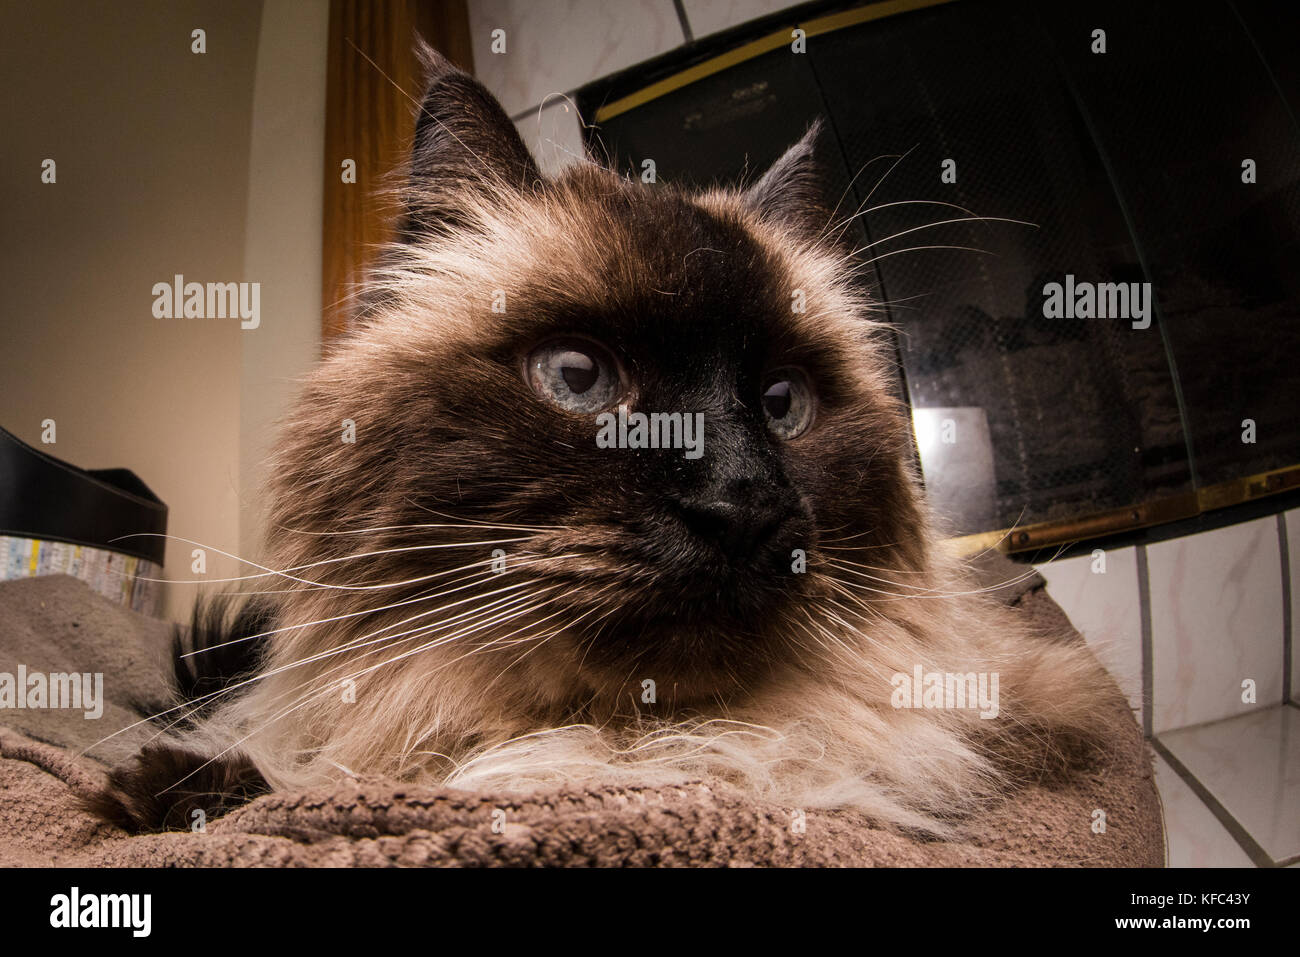 Un beau chat siamois de l'Himalaya dans le salon. Banque D'Images